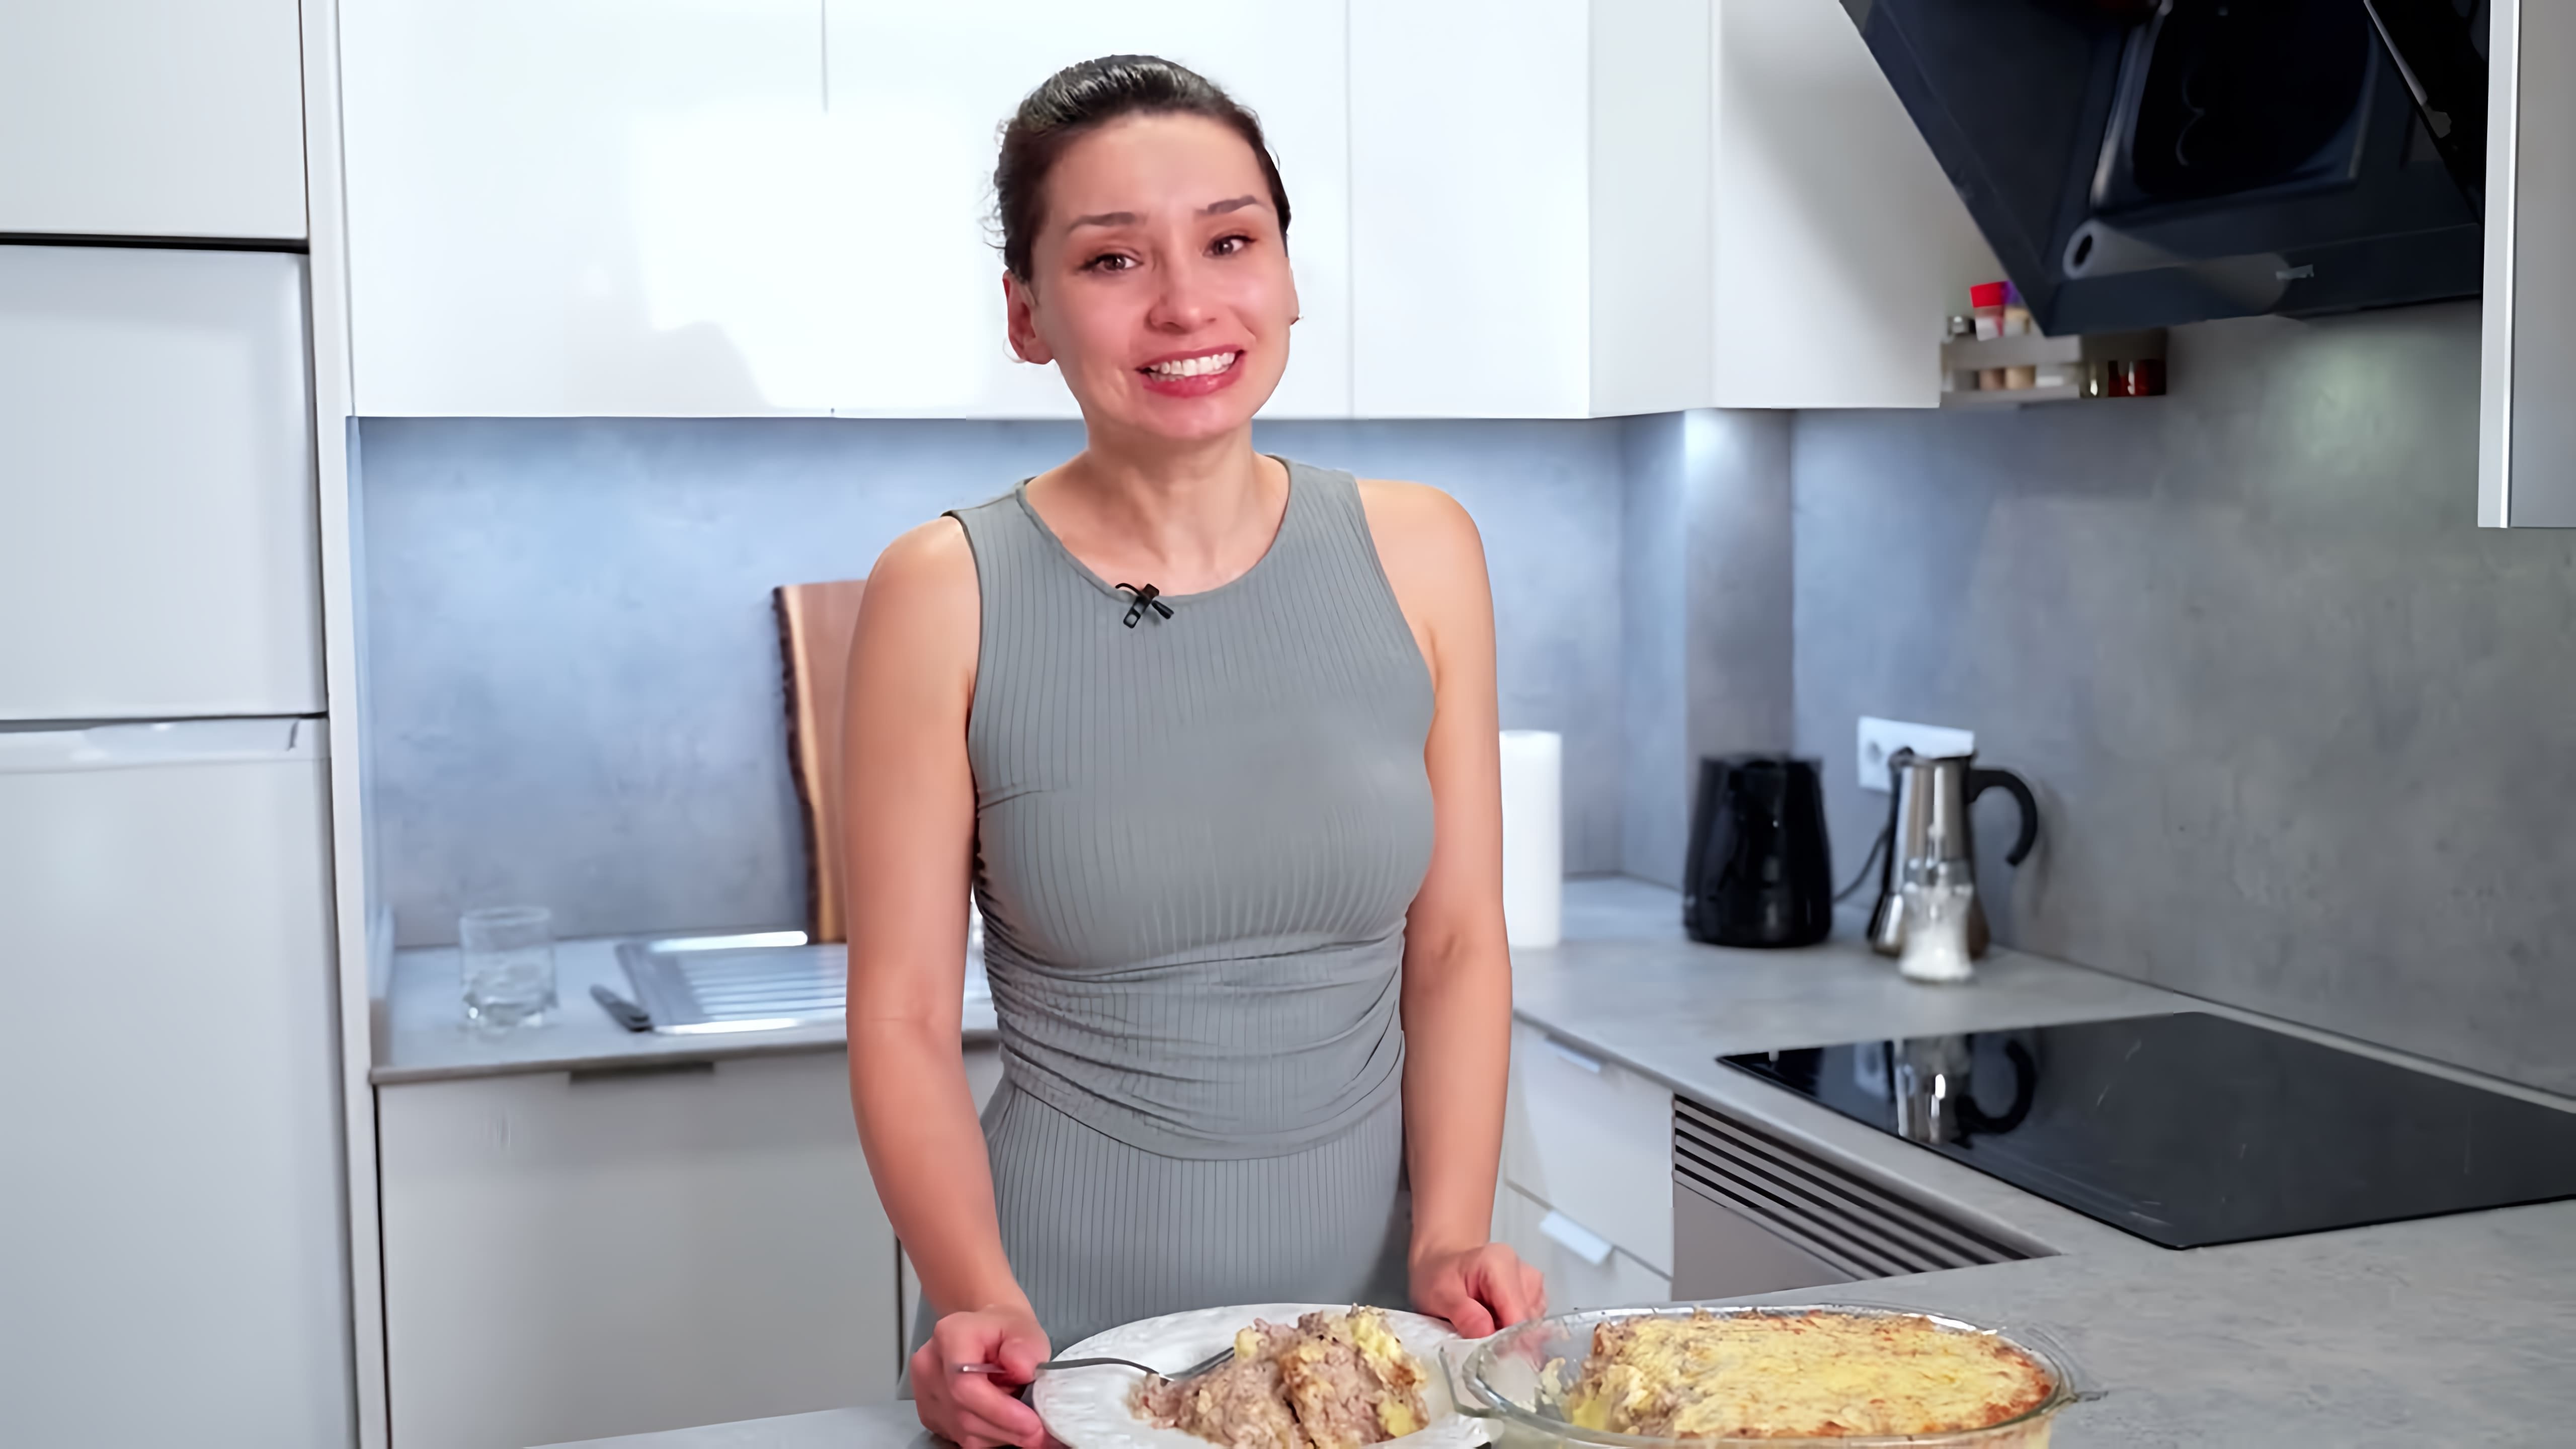 Видео рецепт блюда из картофеля и фарша, которое можно приготовить на обед или ужин